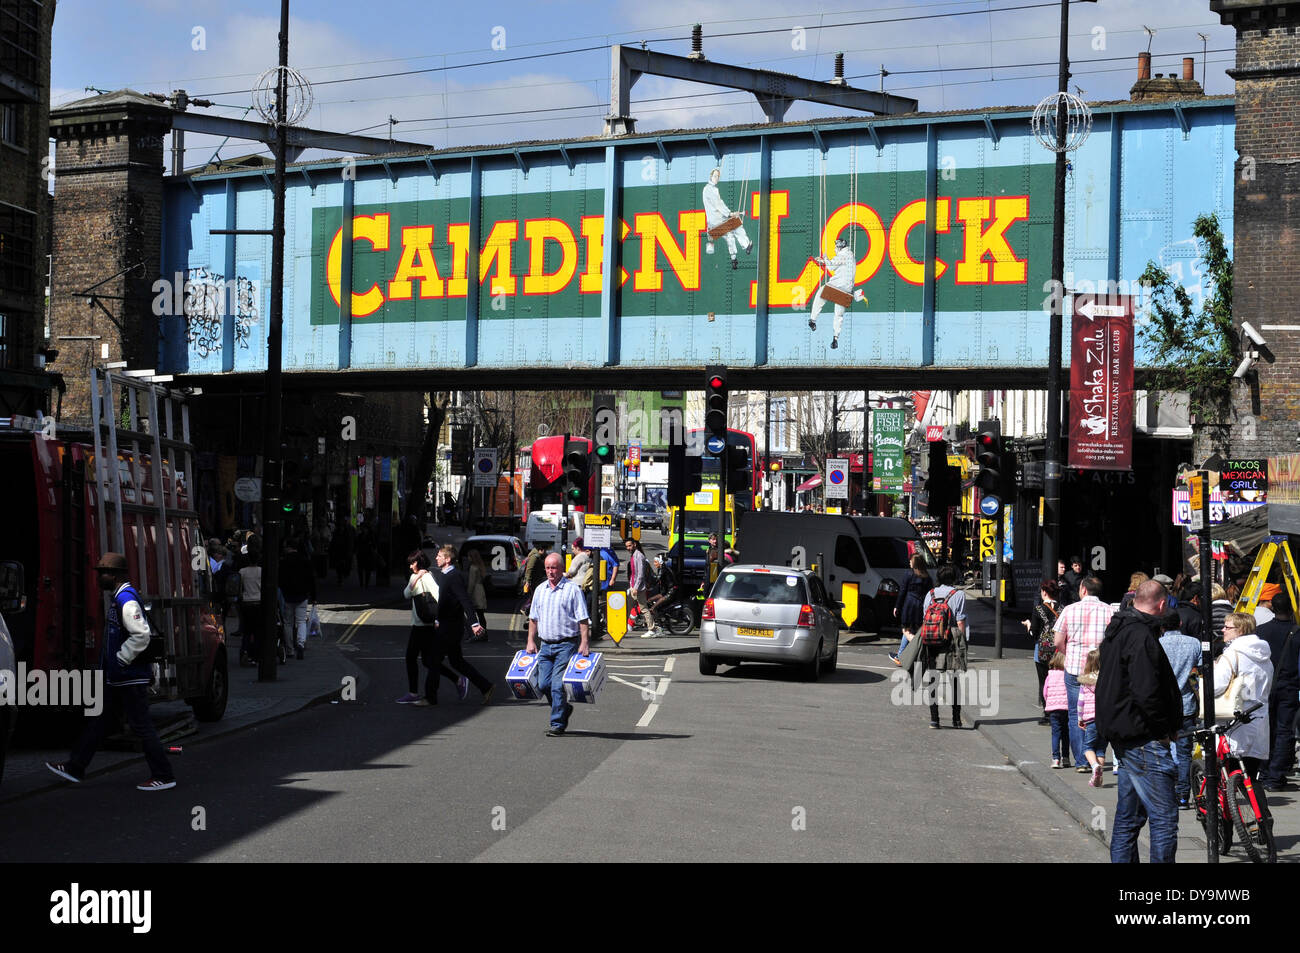 Camden Lock Brücke, London, UK Stockfoto